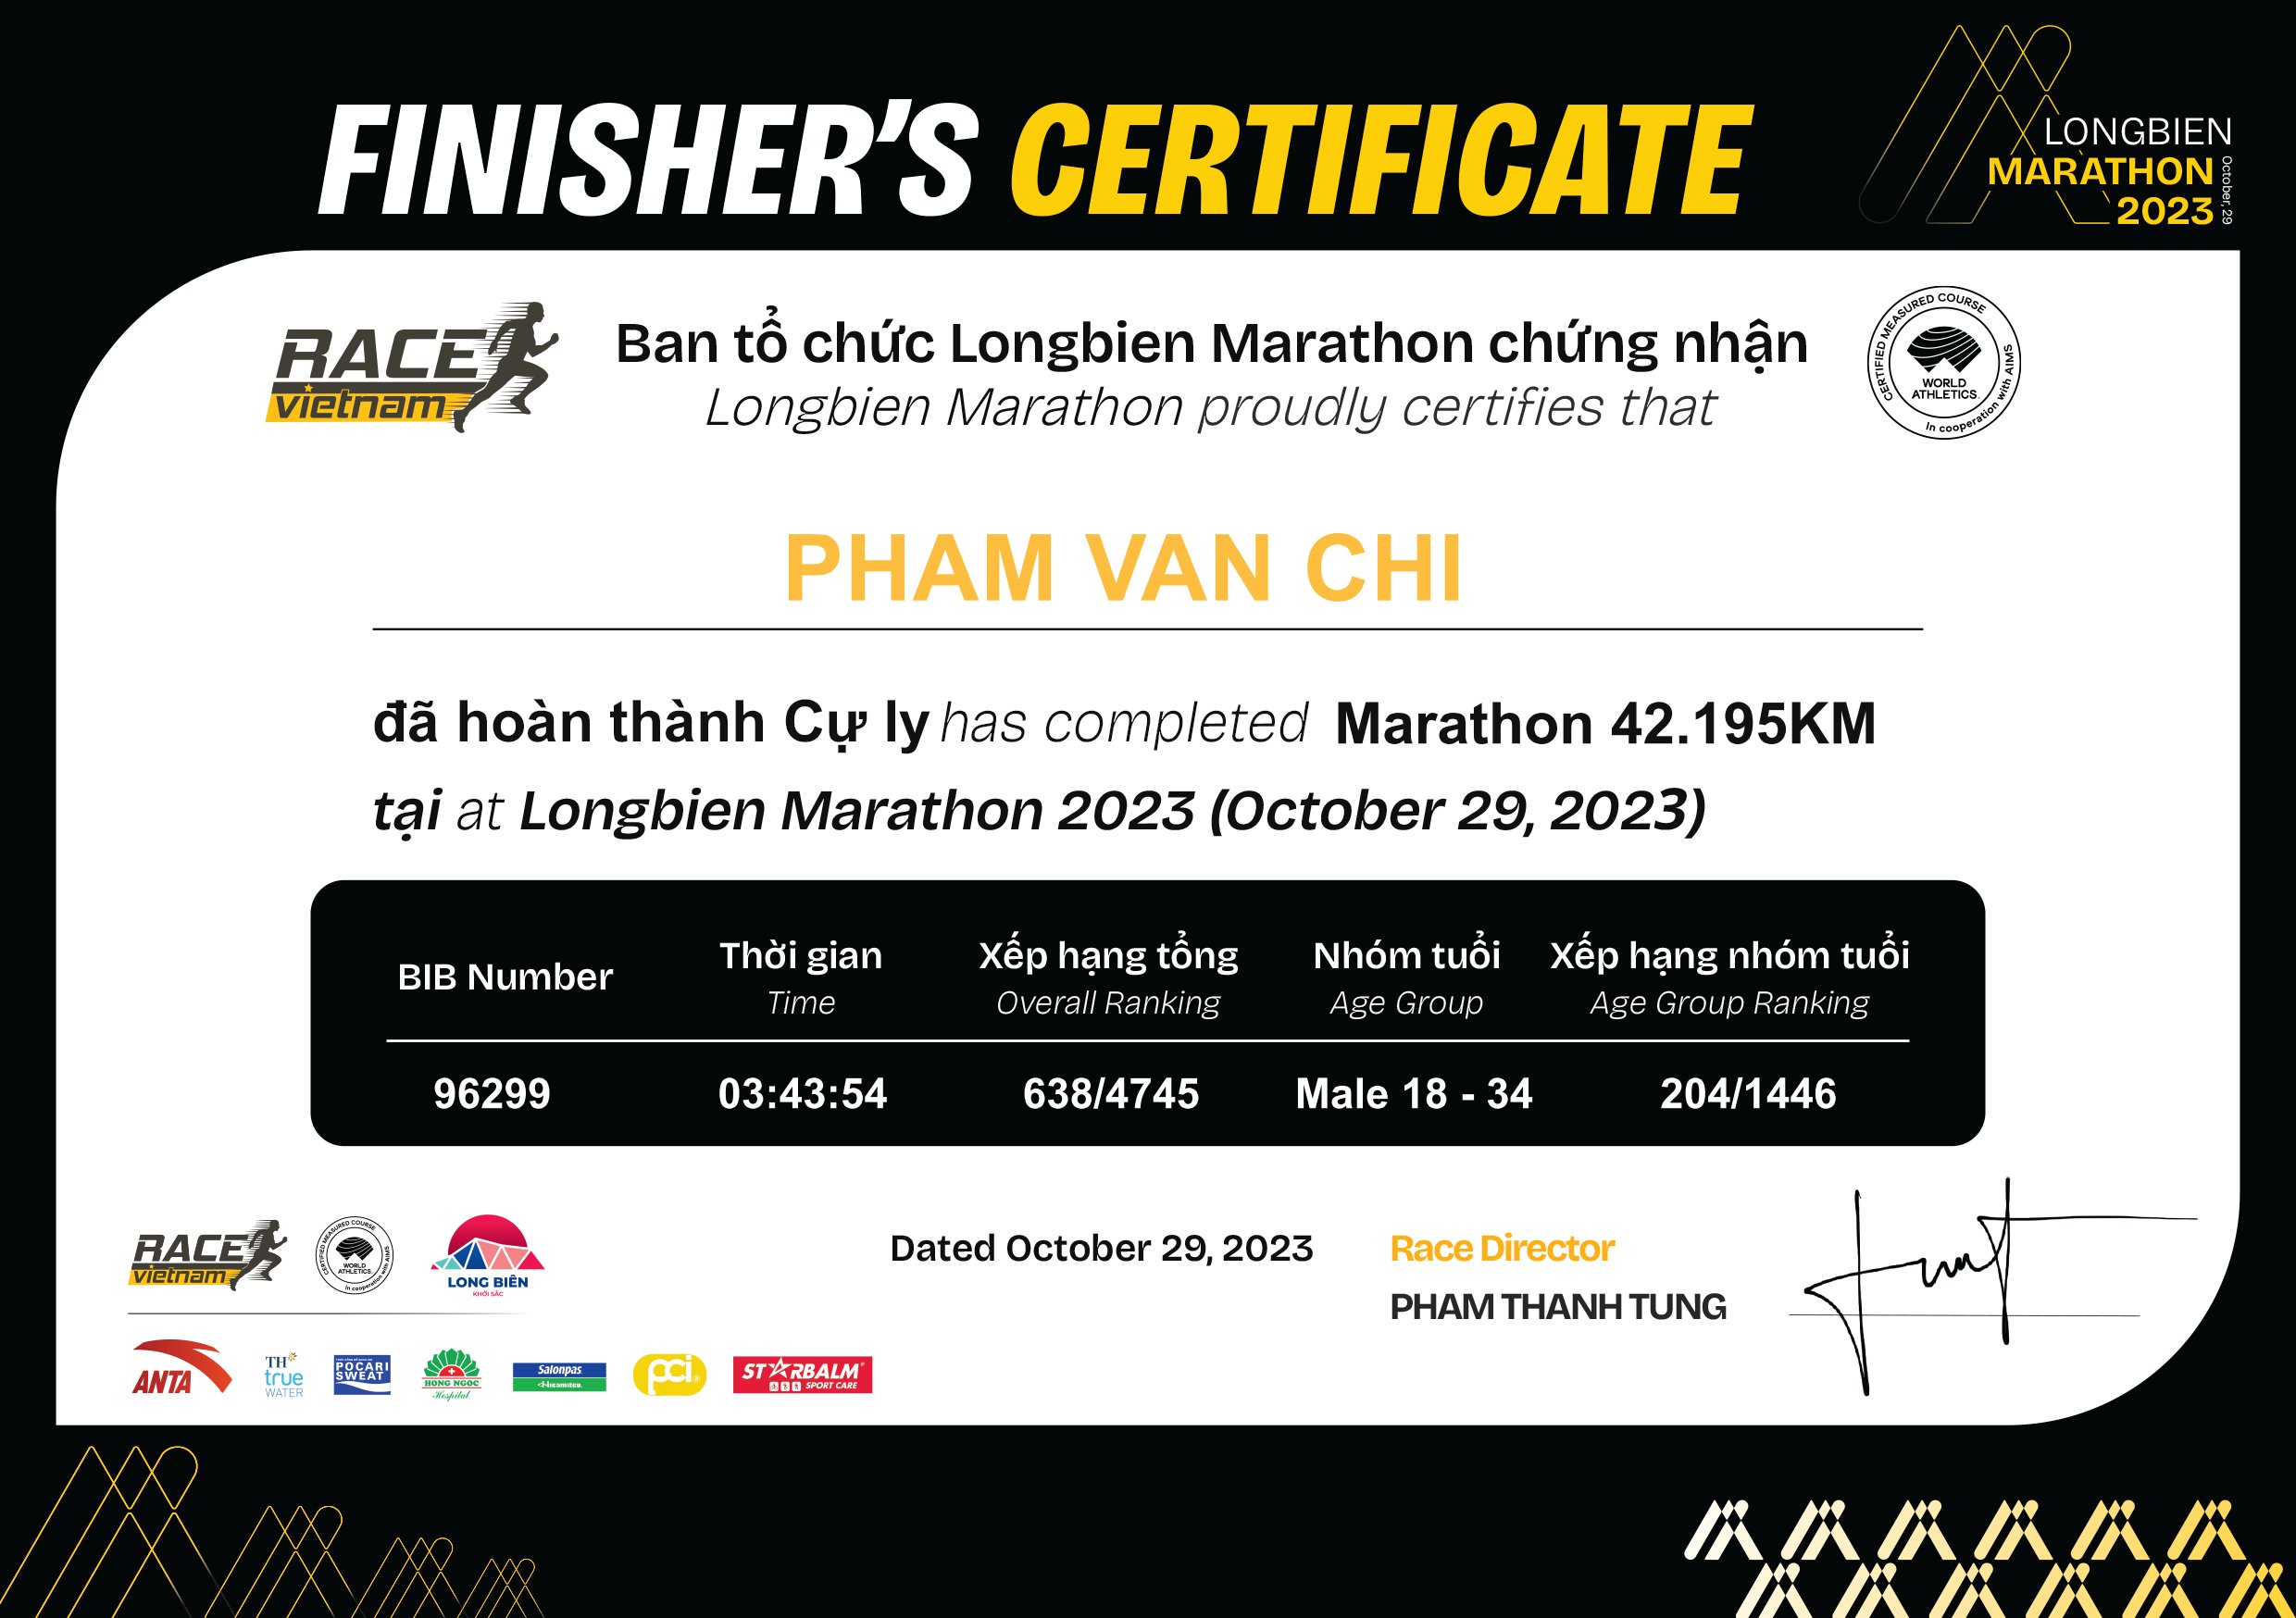 96299 - Pham Van Chi